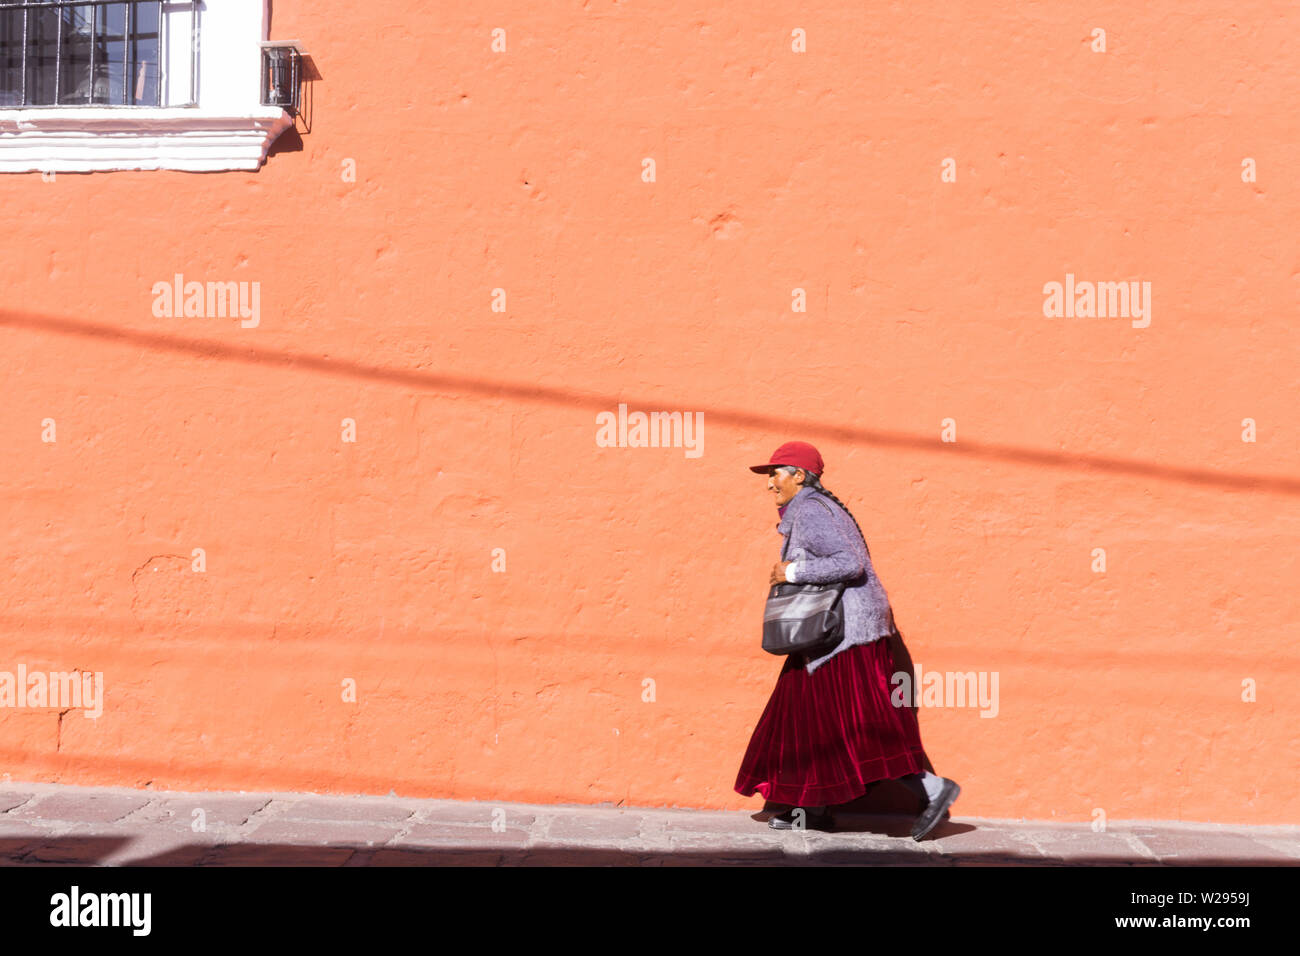 Peru Frau - eine Straße von einer alten peruanischen Frau zu Fuß durch einen Terra Cotta Farben Gebäude - Arequipa, Peru, Südamerika. Stockfoto